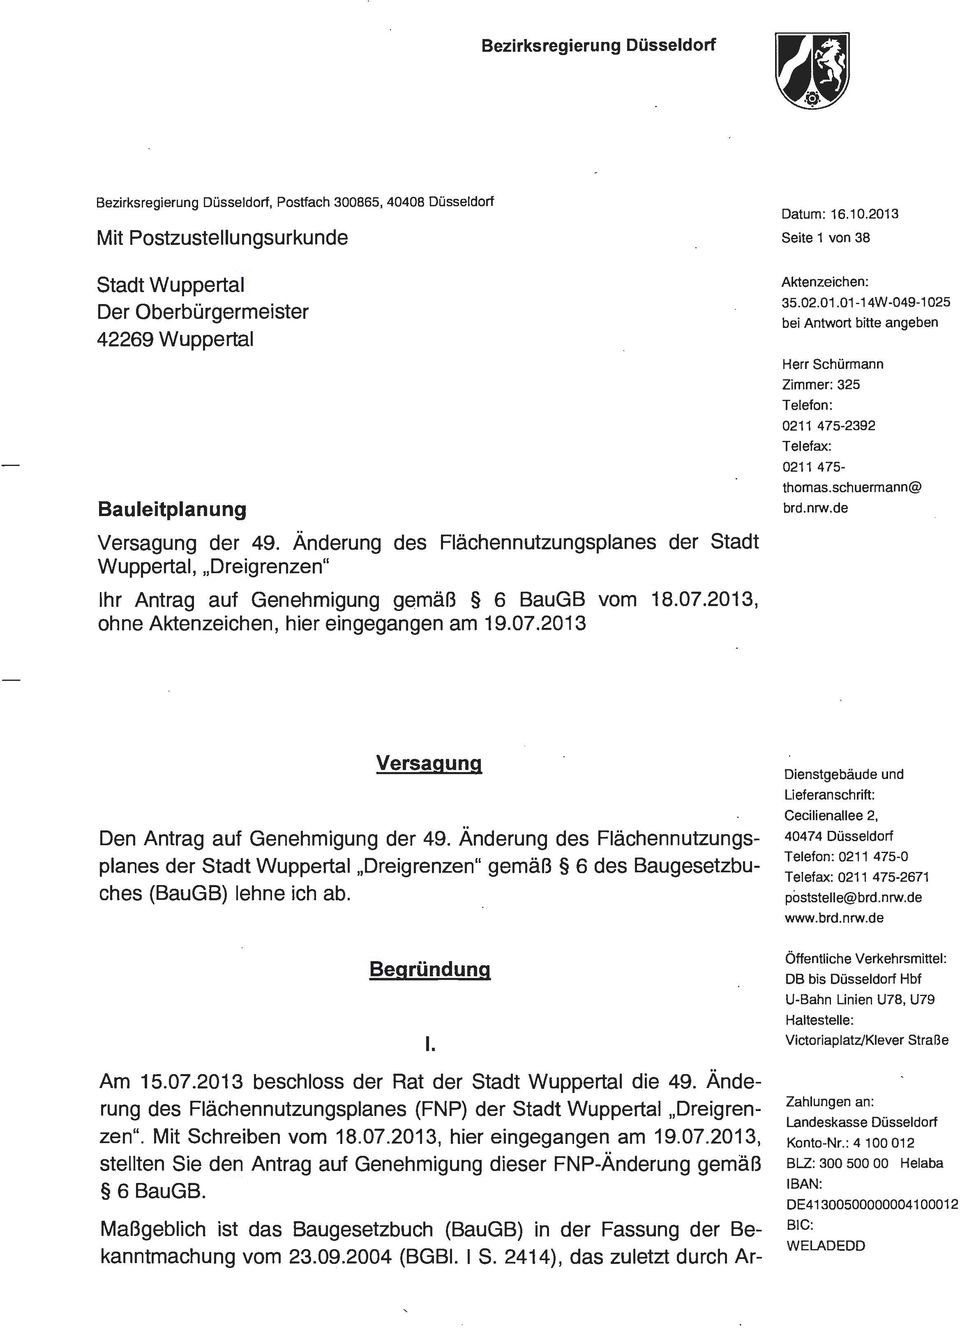 Änderung des Flächennutzungsplanes der Stadt Wuppertal, Dreigrenzen" Ihr Antrag auf Genehmigung gemäß 6 BauGB vom 18.07.2013